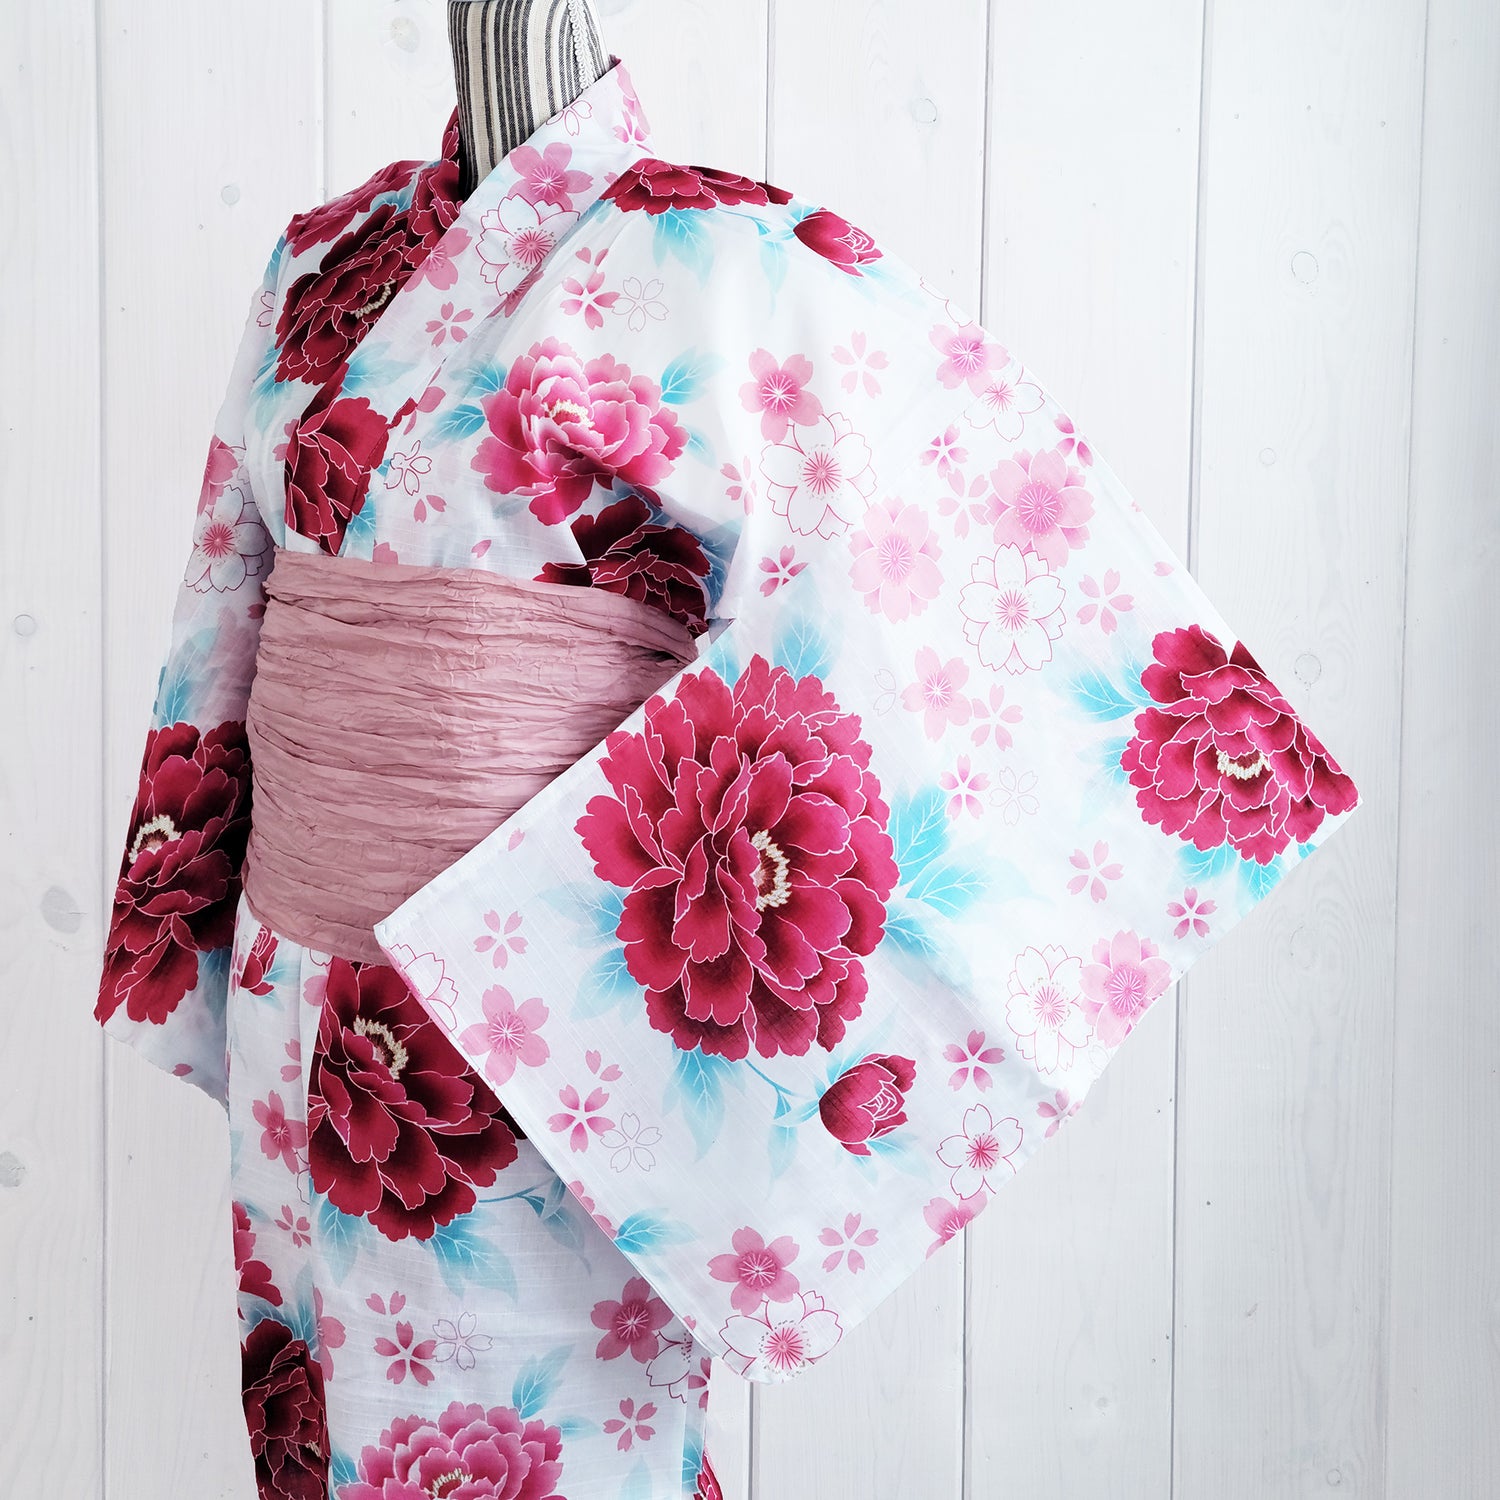 Women's Japanese Yukata Kimono - Pink Cherry Blossoms and Chrysanthemums in White